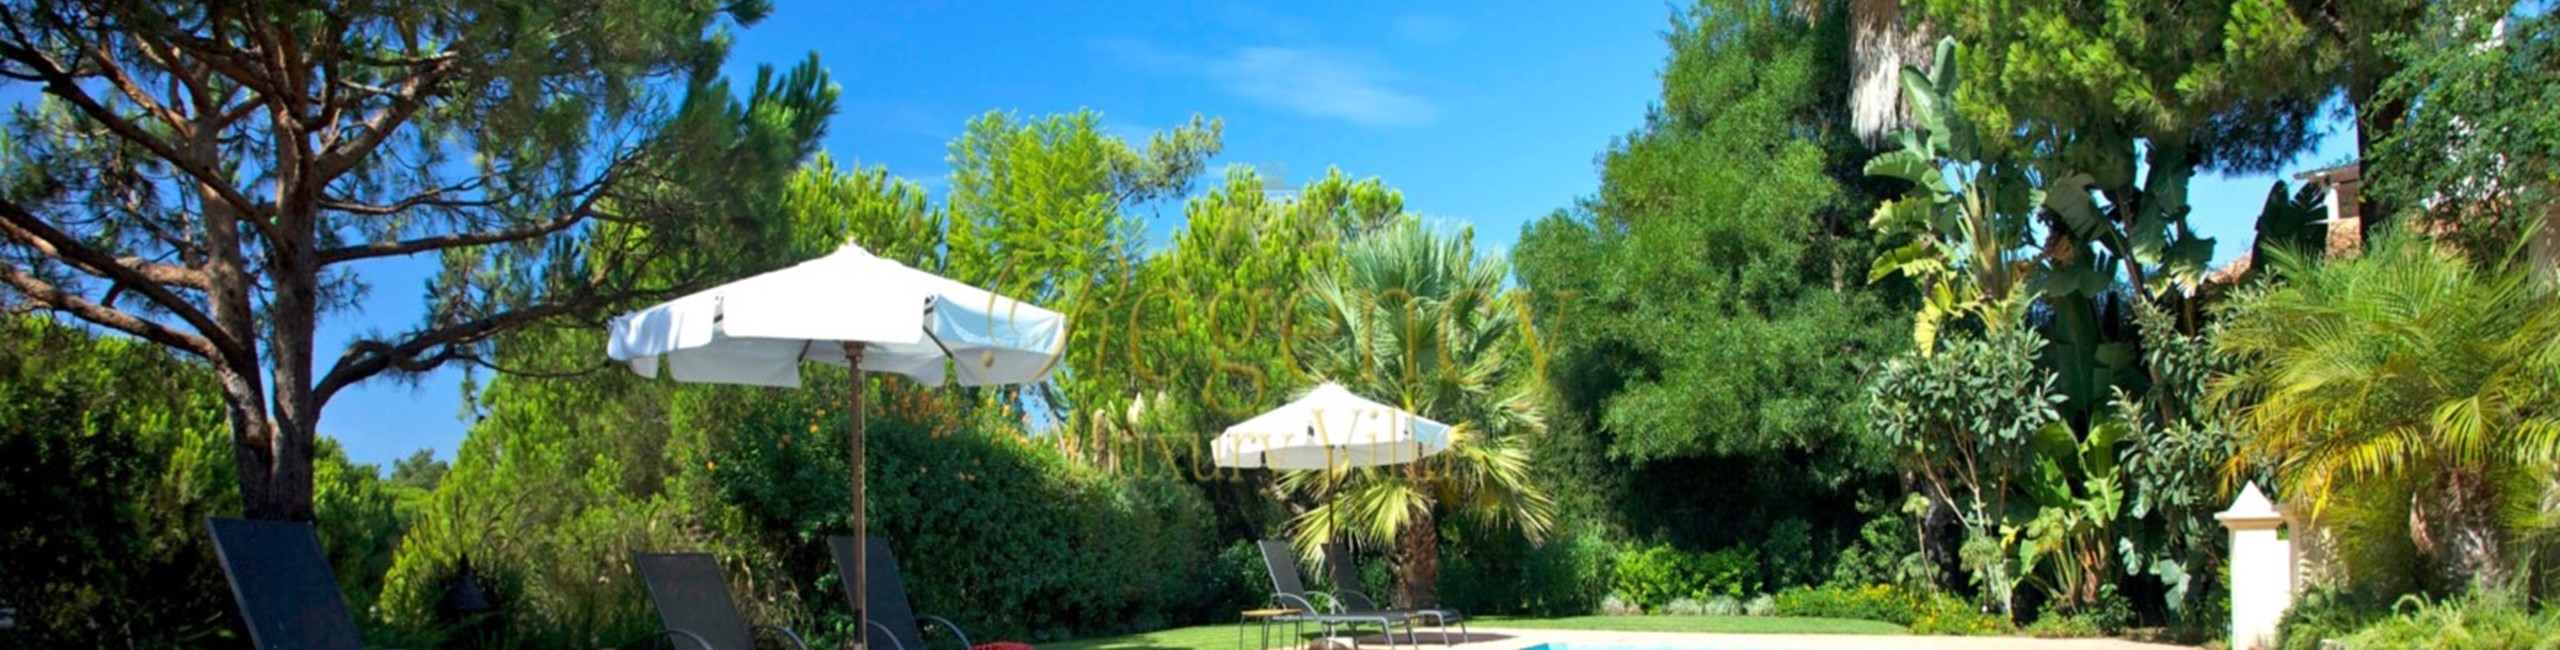 6 Bed Villa To Rent In Quinta Do Lago Algarve Regency Luxury Villas 1